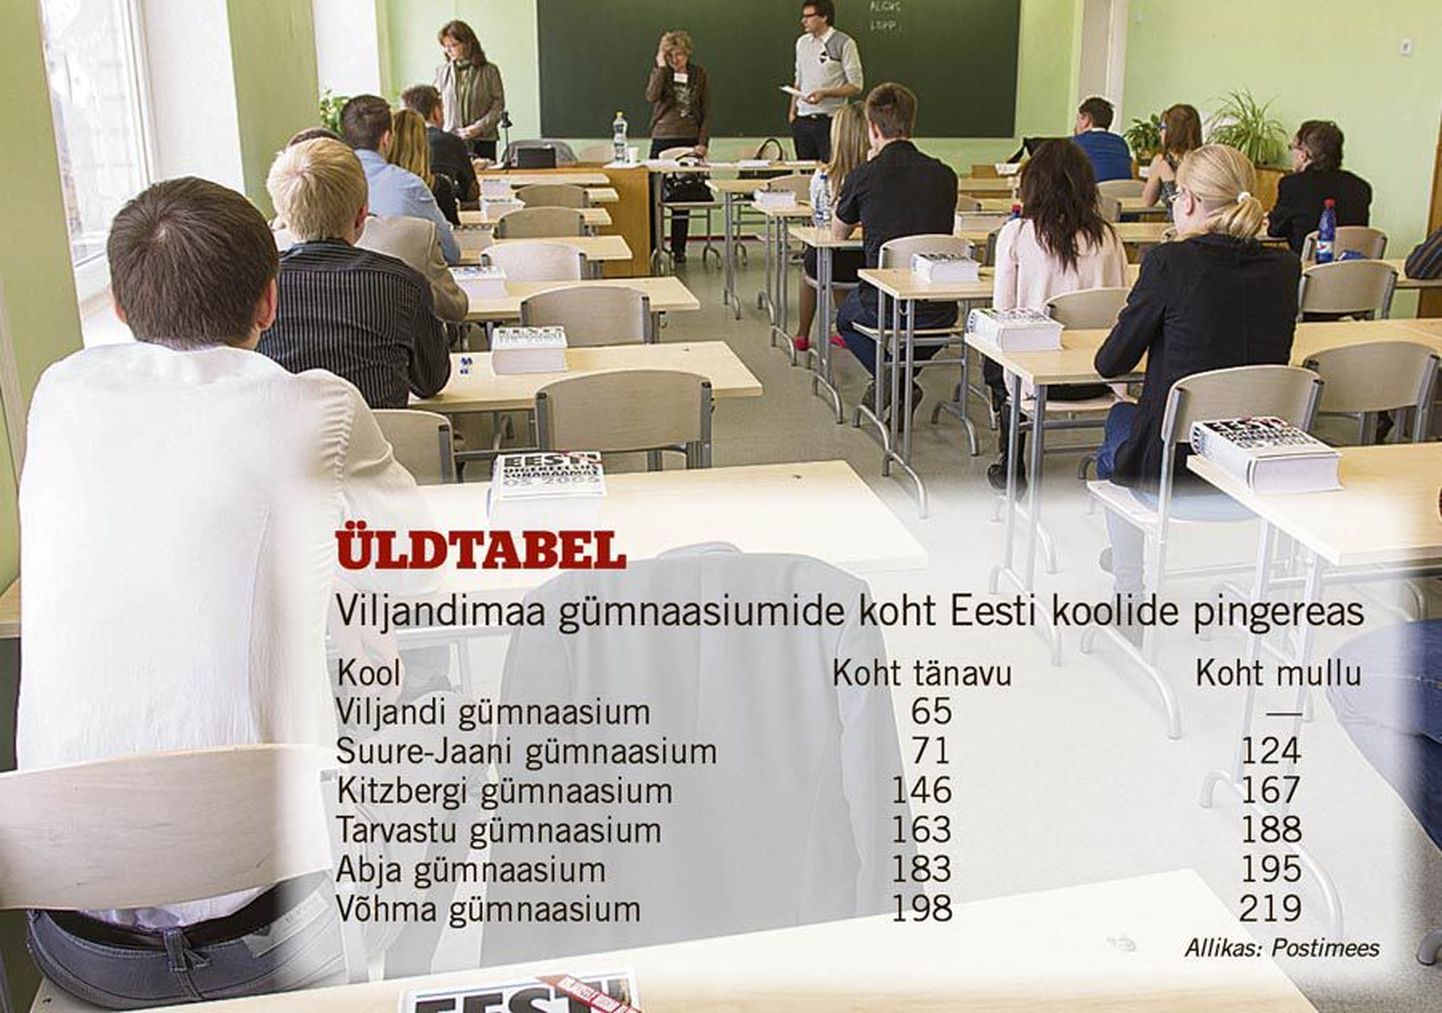 Eesti keele eksami tegi Viljandi gümnaasiumis tänavu 160 noort. Nende saavutatud keskmine tulemus jäi alla Suure-Jaani gümnaasiumi 30 abituriendi näidatud keskmisele.